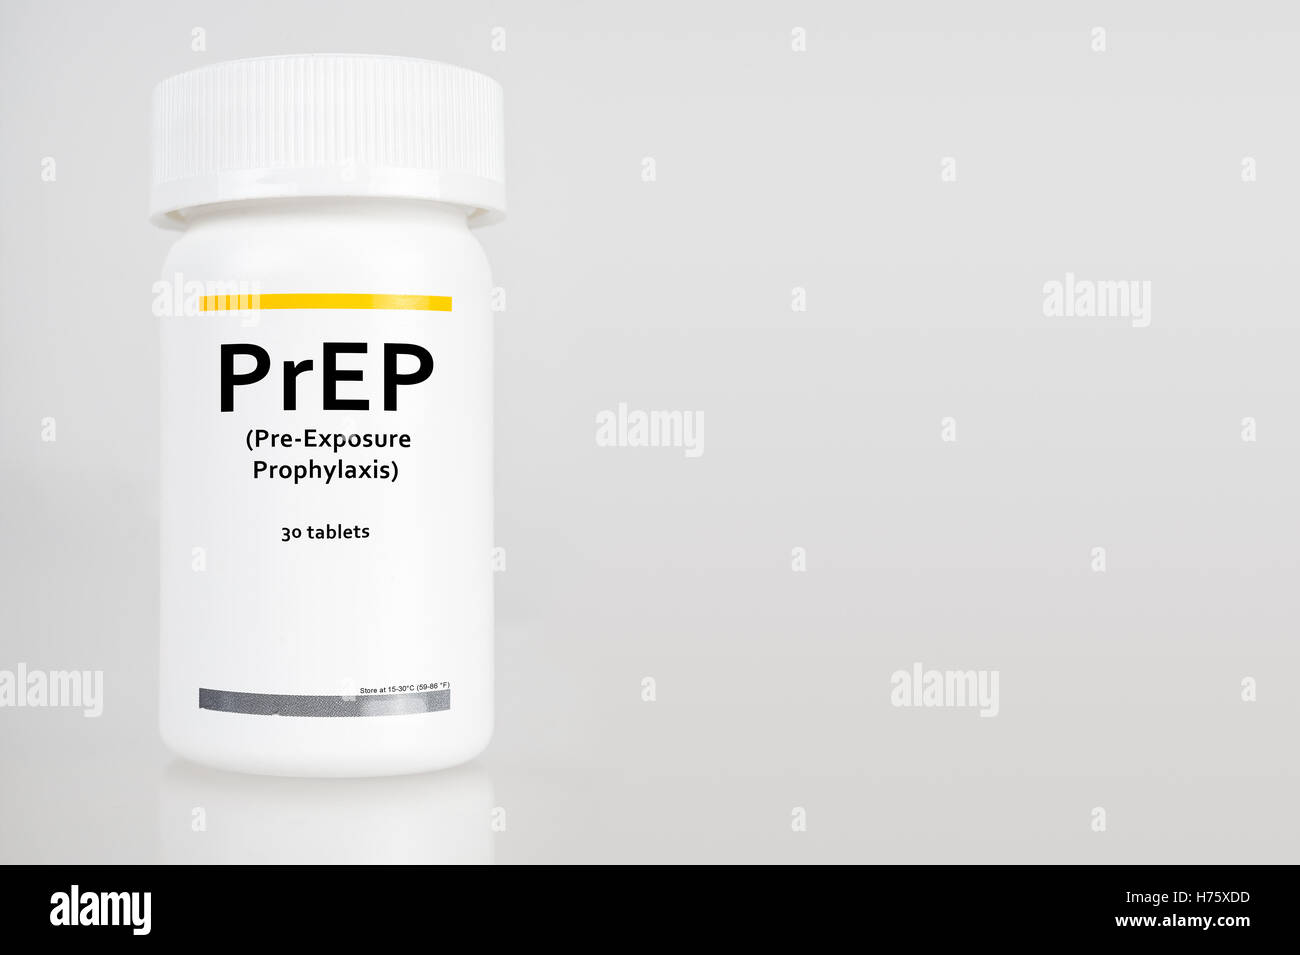 Bouteille de pilules avec étiquette 'PrEP' (acronyme de immunisation avant exposition prophylaxie). Le traitement de préparation est utilisée pour prévenir l'infection par le VIH Banque D'Images